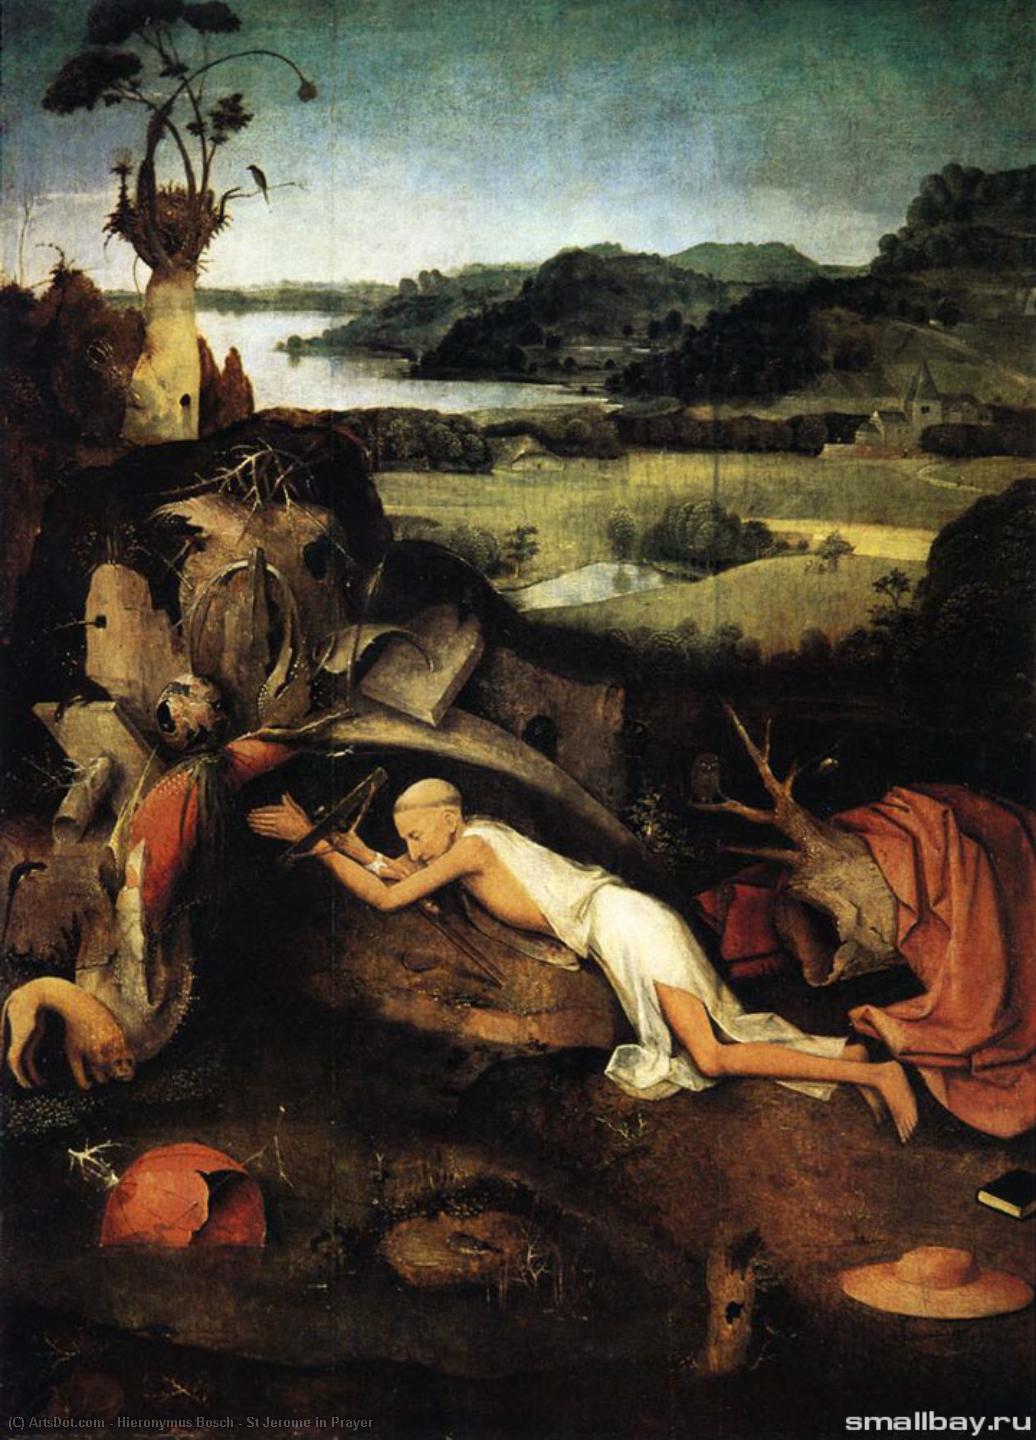 WikiOO.org - Енциклопедия за изящни изкуства - Живопис, Произведения на изкуството Hieronymus Bosch - St Jerome in Prayer